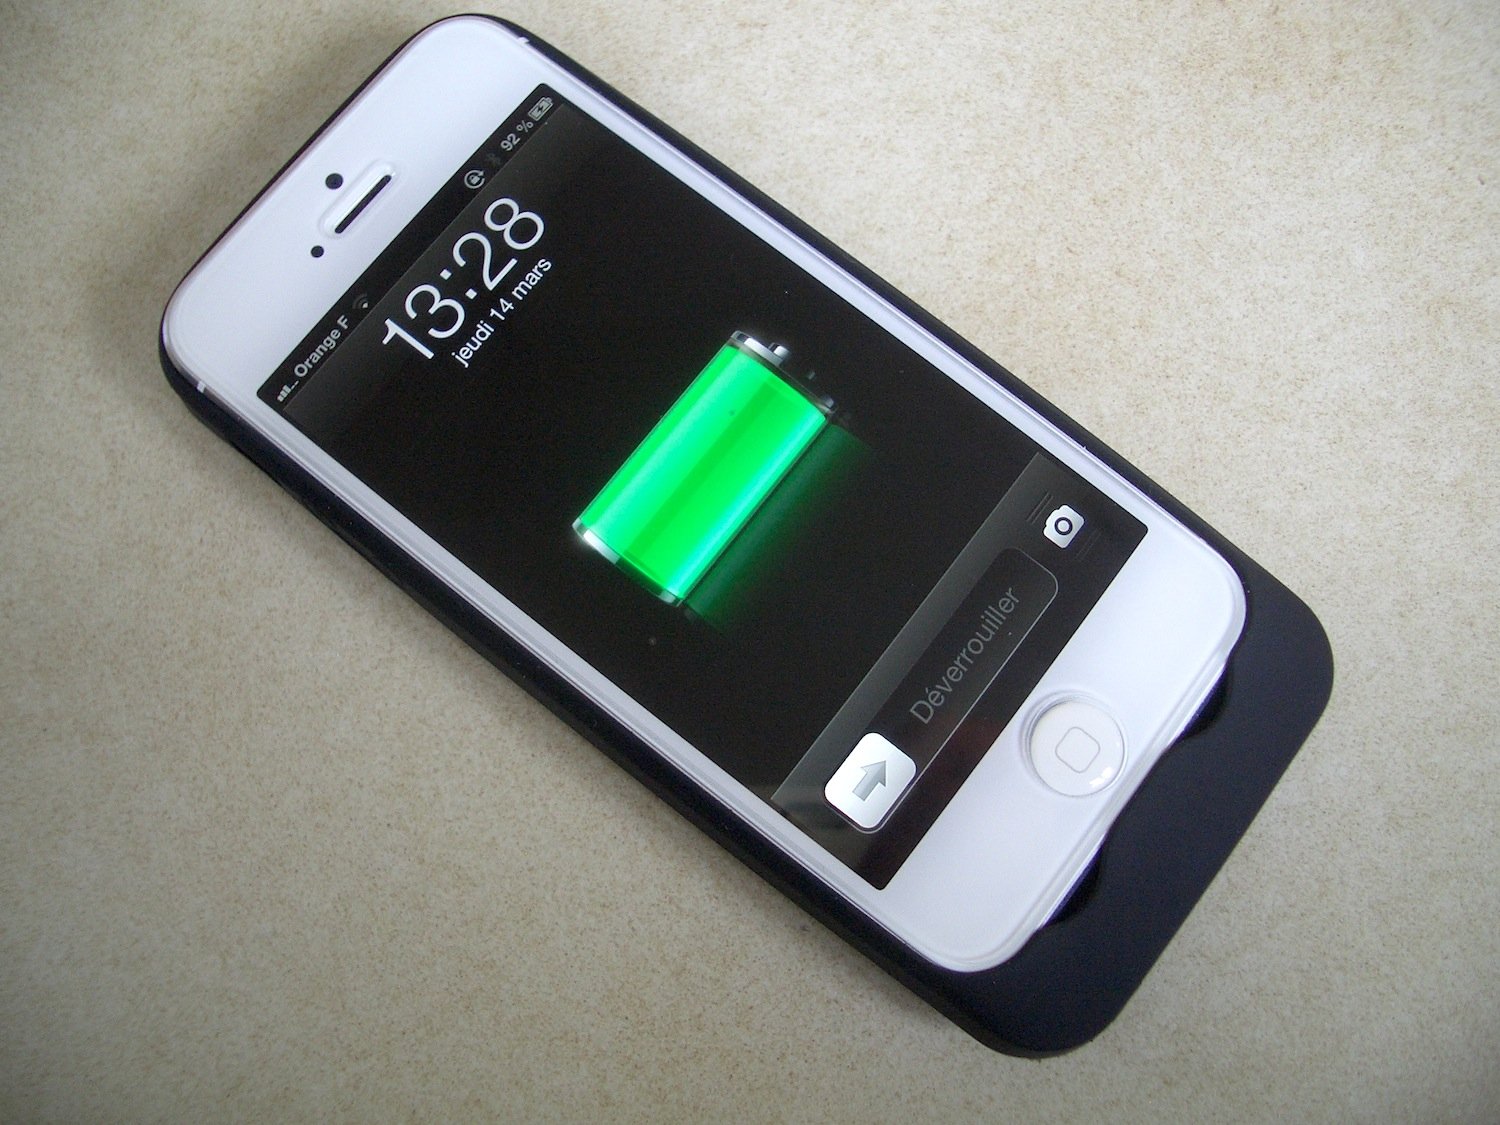 Coque batterie Power Pack XTORM pour iPhone 5 / 5S certifié Apple achat  vente écologique - Acheter sur